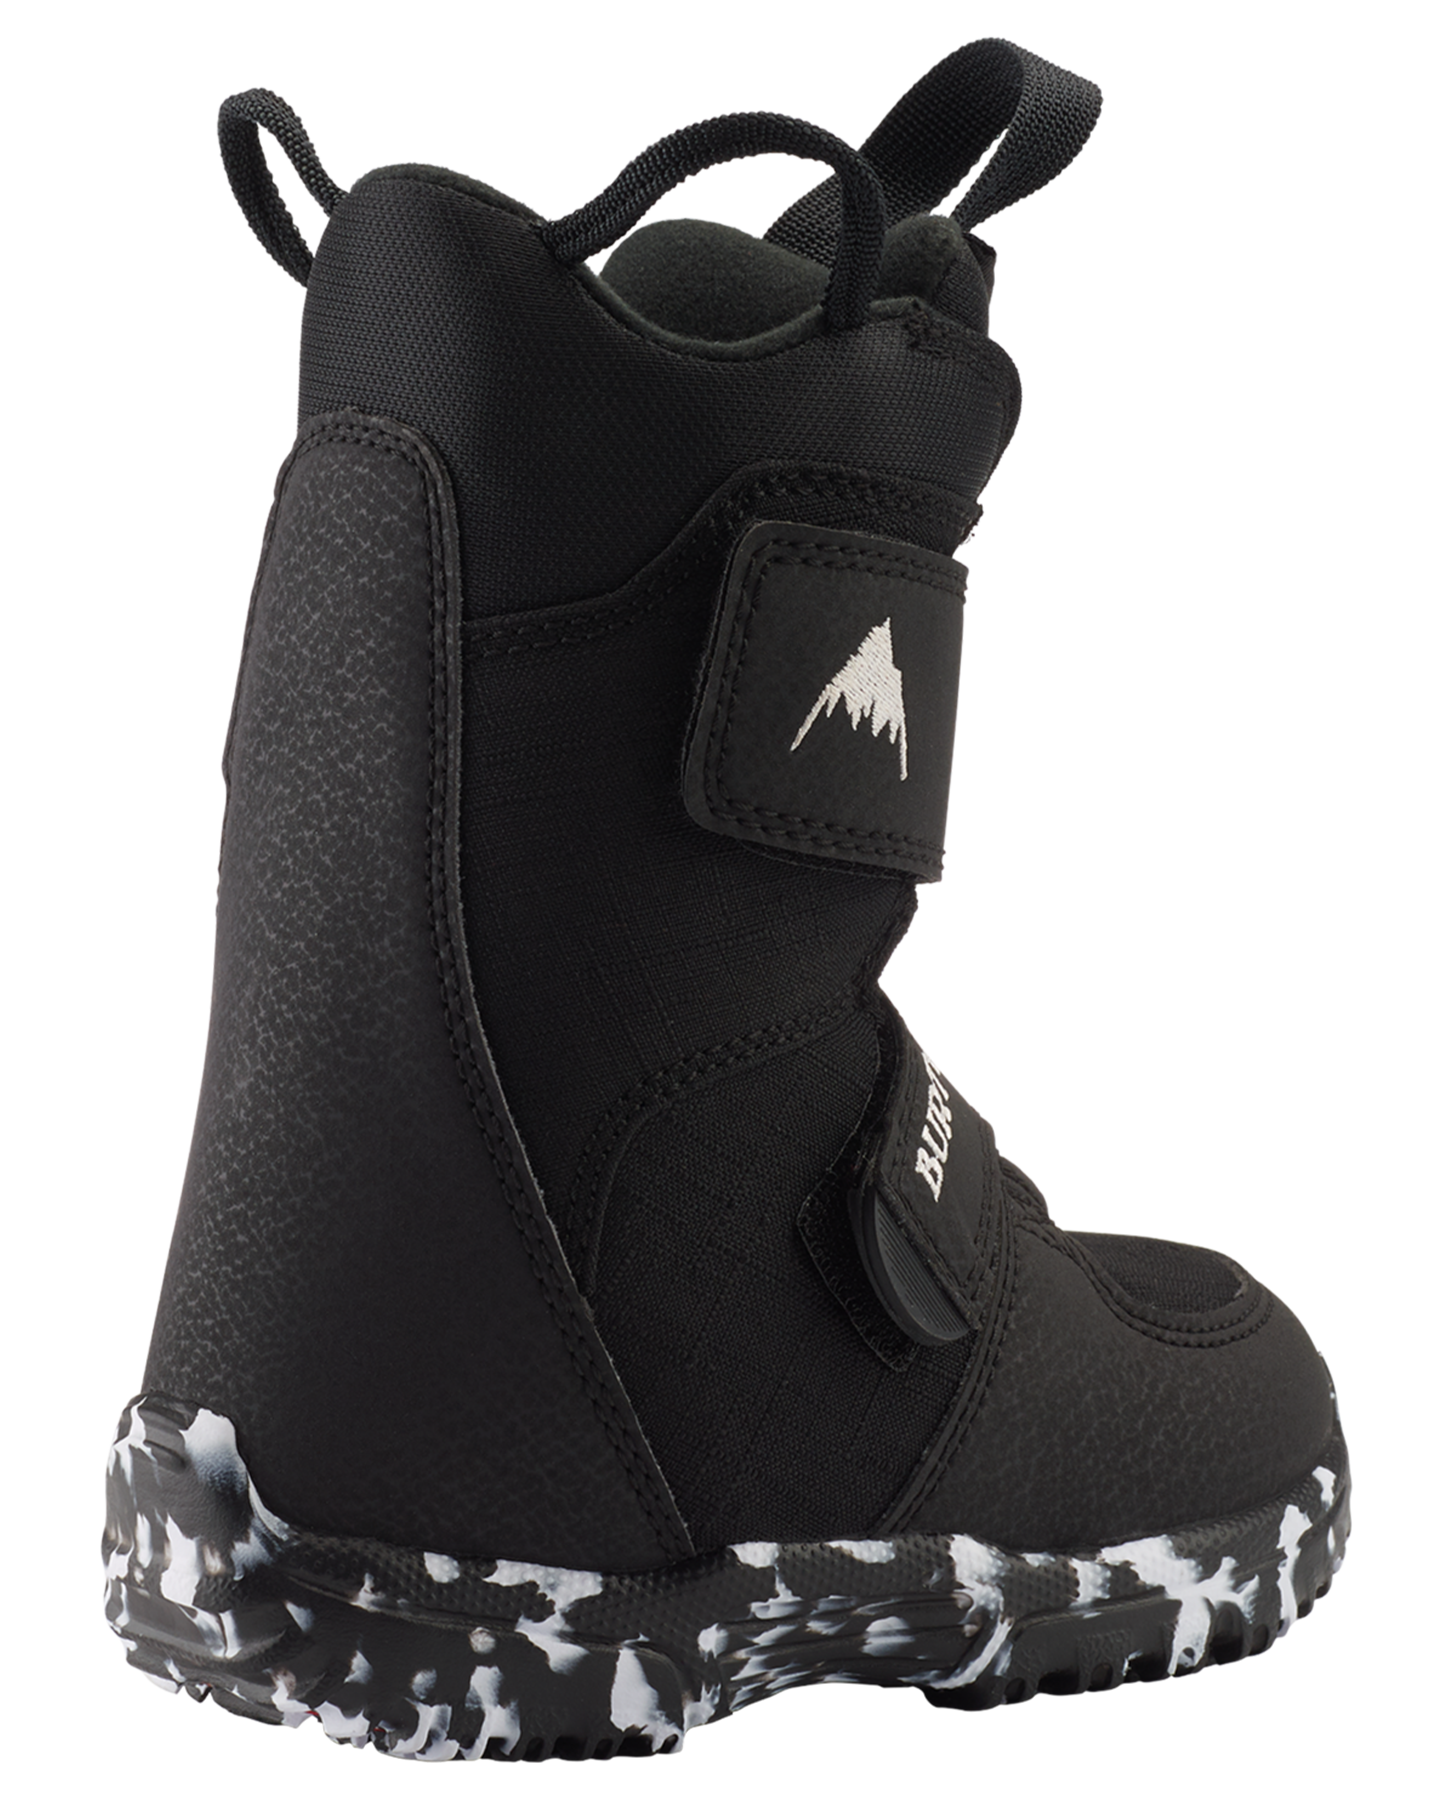 Burton Toddlers' Mini Grom Snowboard Boots - Black Kids' Snowboard Boots - Trojan Wake Ski Snow